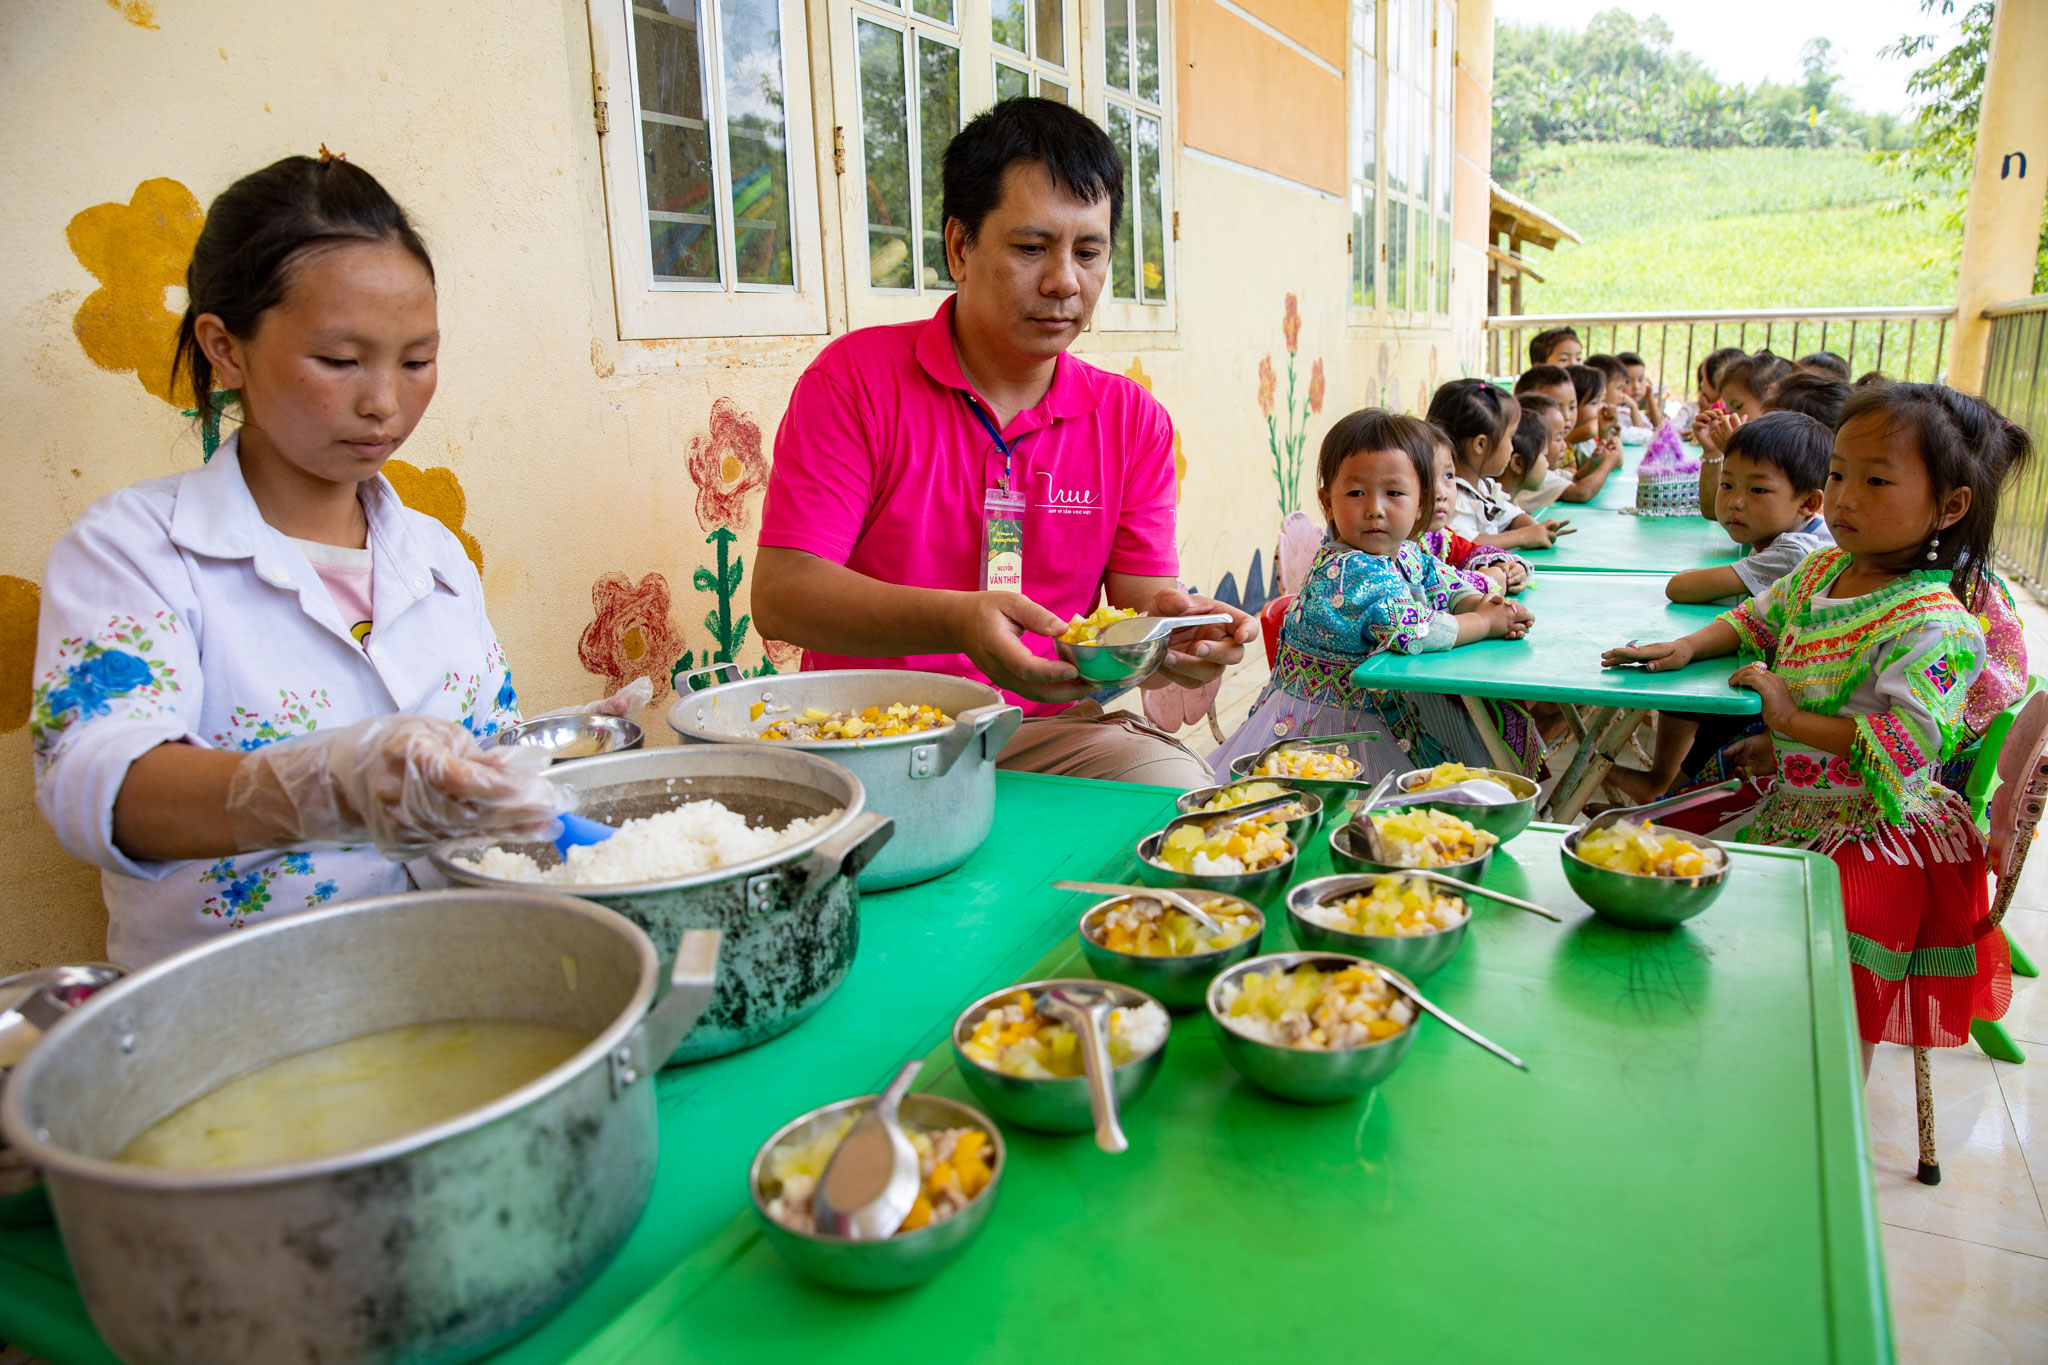 Tại điểm trường, các tình nguyện viên trong chuyến đi “Mùa nắng Pác Miầu” thuộc hoạt động của dự án “Cùng em khôn lớn” cũng cùng tham gia hỗ trợ chuẩn bị bữa ăn bán trú cho các em học sinh.